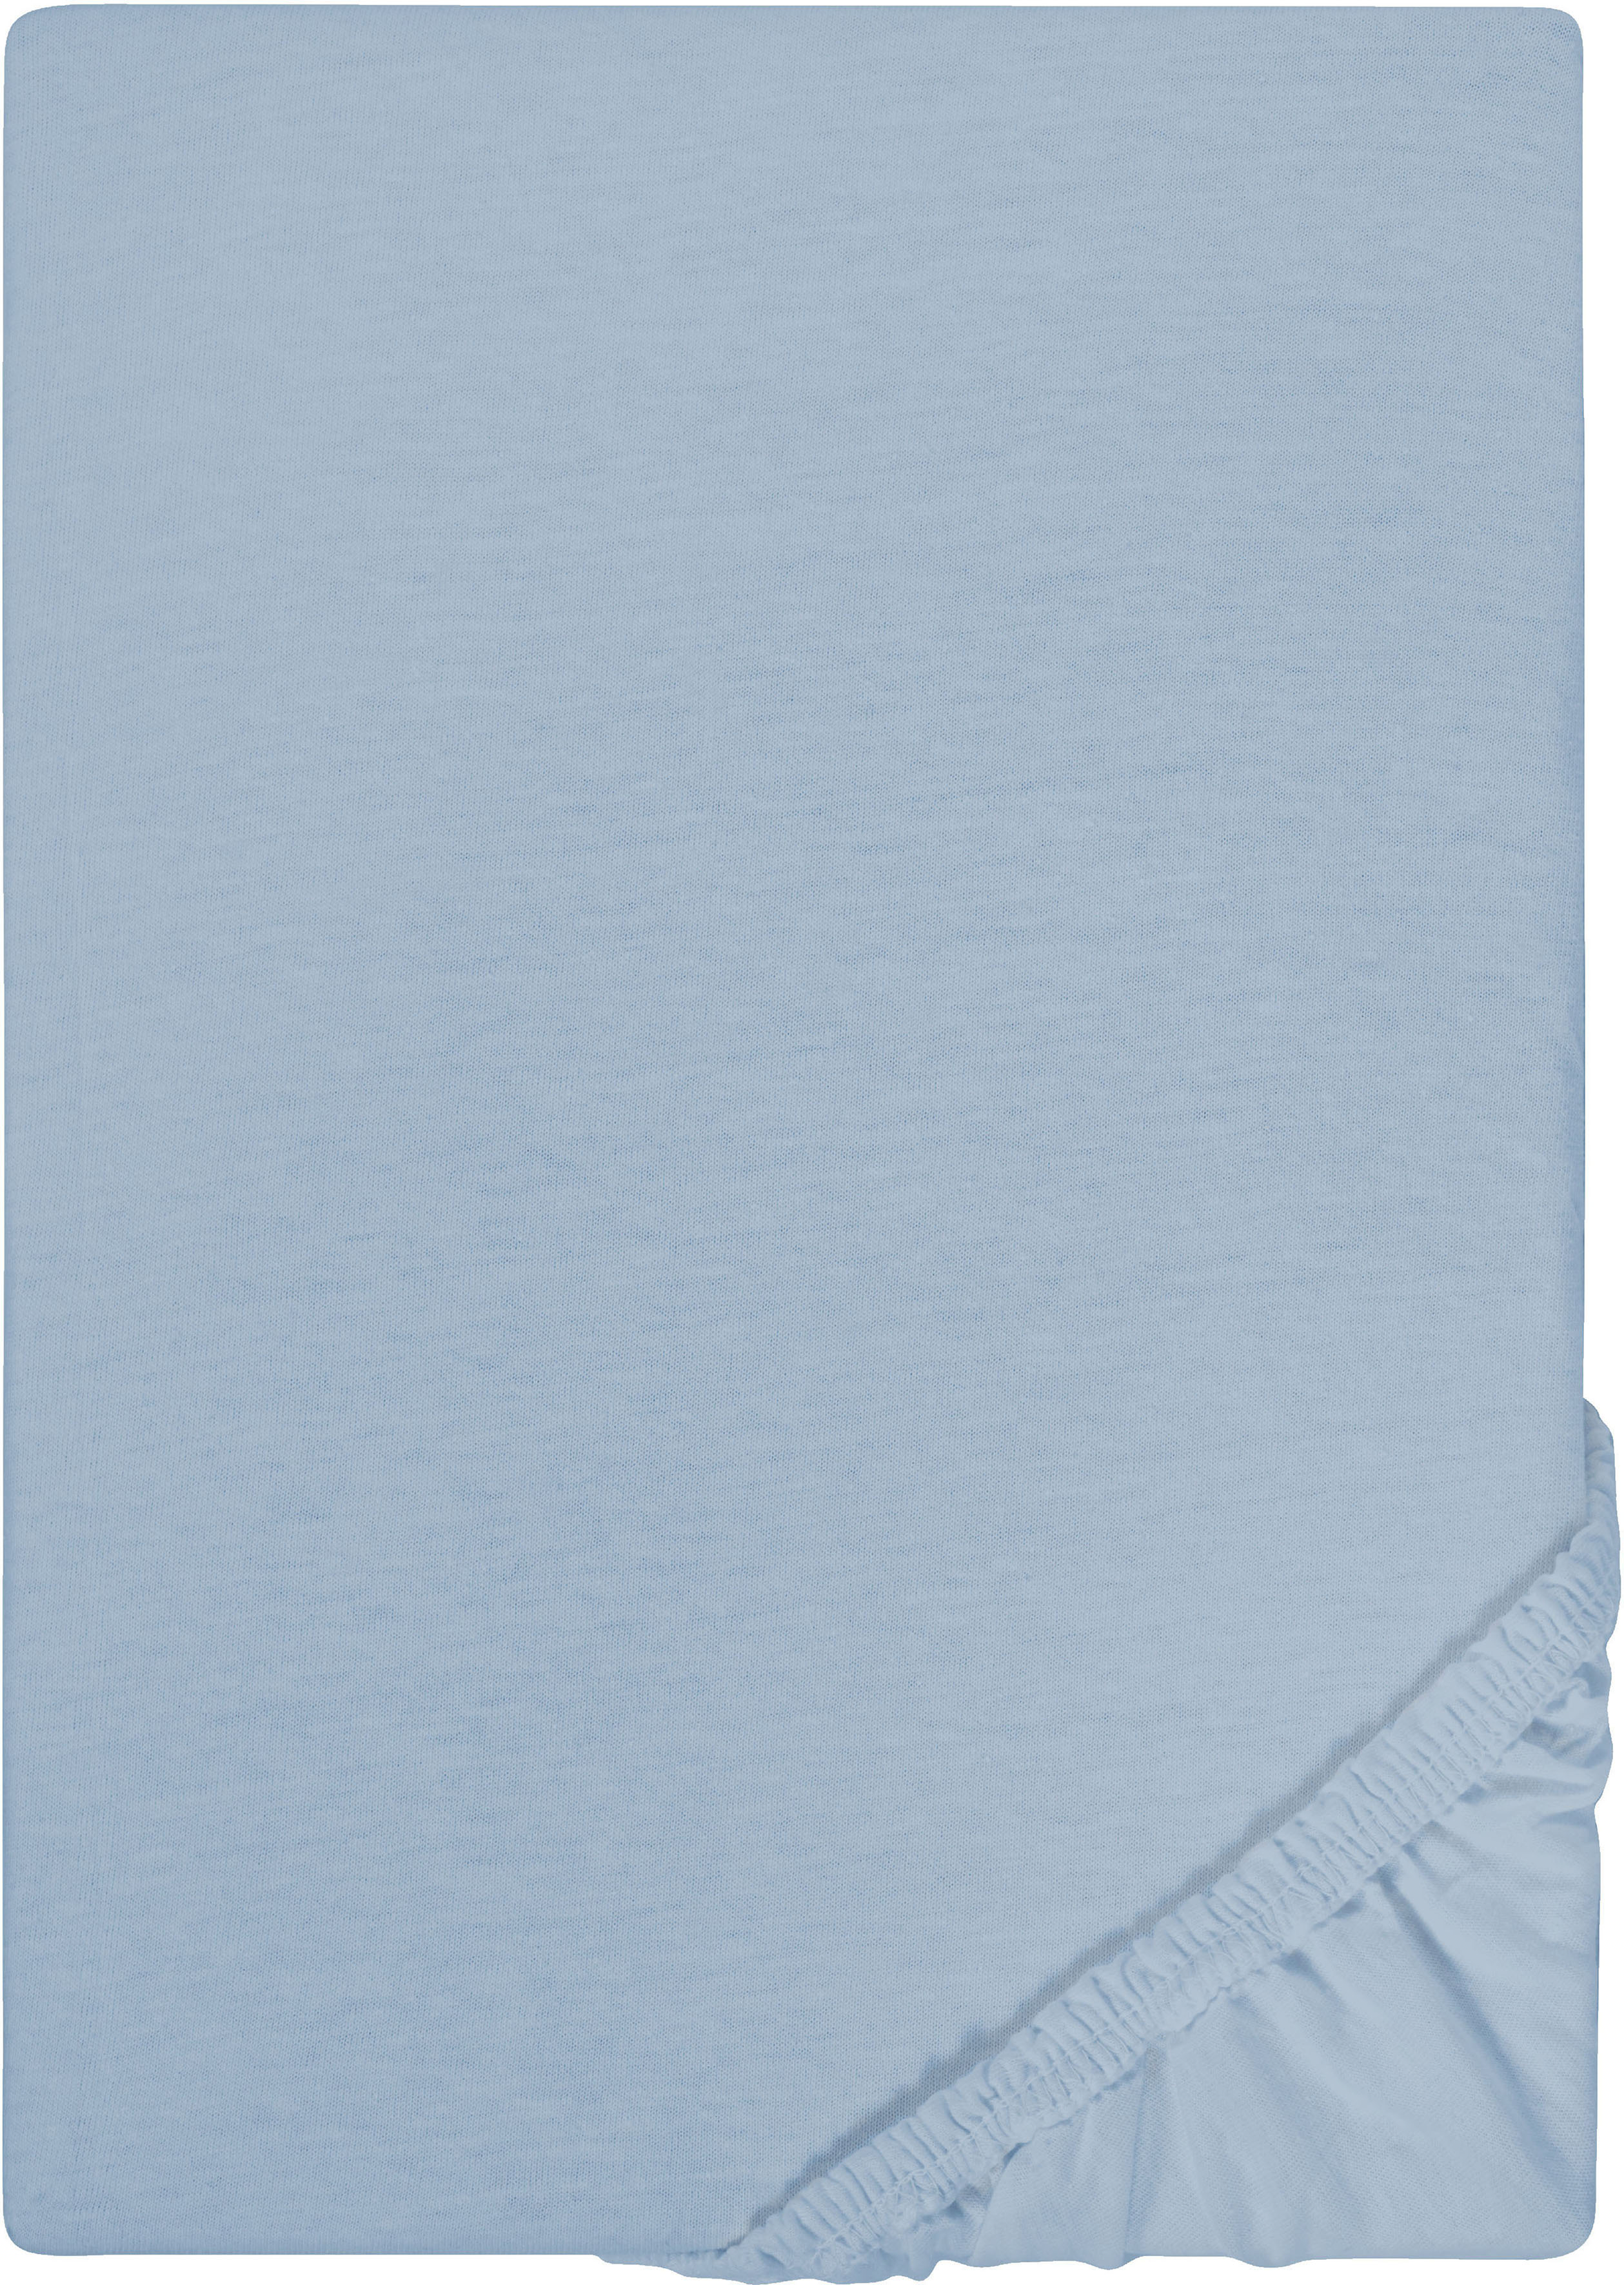 biberna 77155 Jersey-Stretch Spannbetttuch, nach Öko-Tex Standard 100, ca. 90 x 190 cm bis 100 x 200 cm, sand